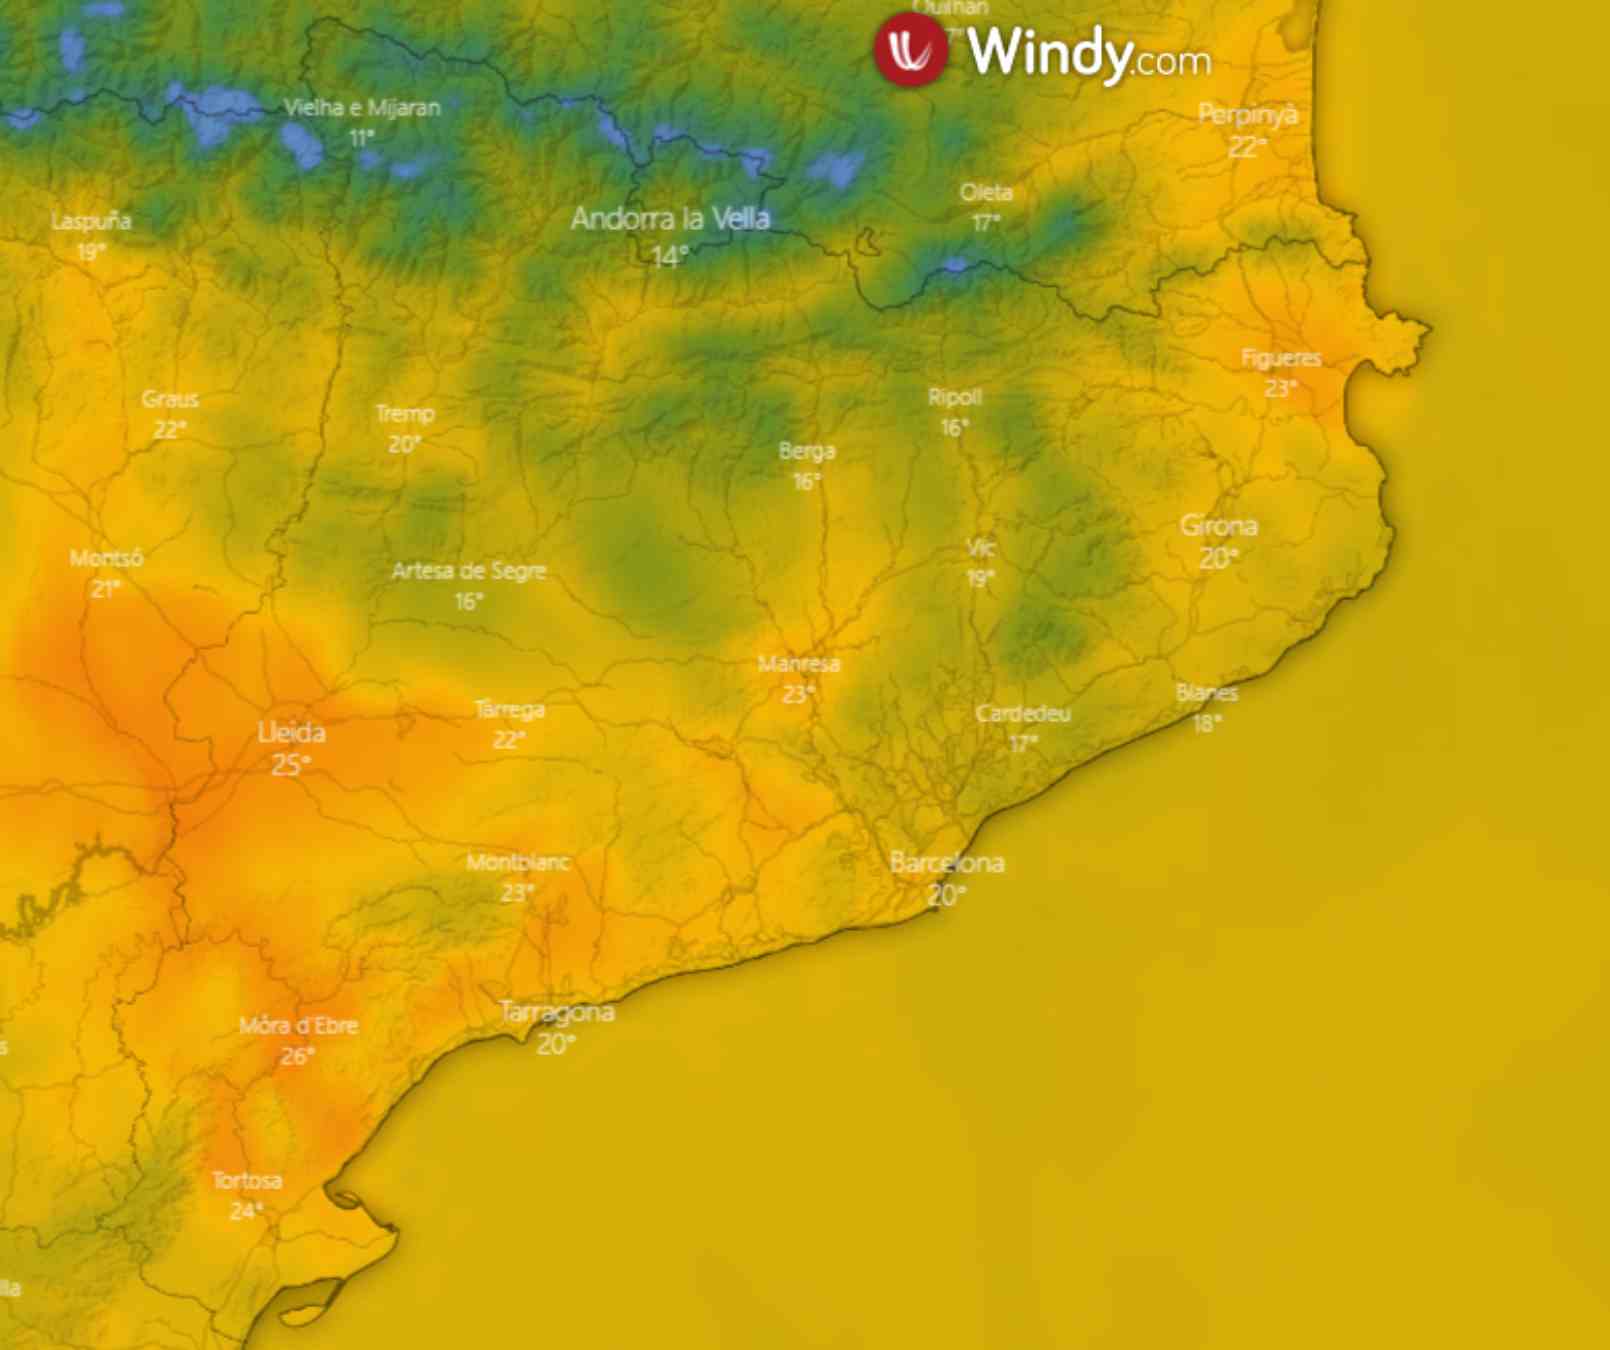 La temperatura más alta este domingo se dará entre Tortosa, Móra d'Ebre y Lleida / WINDY